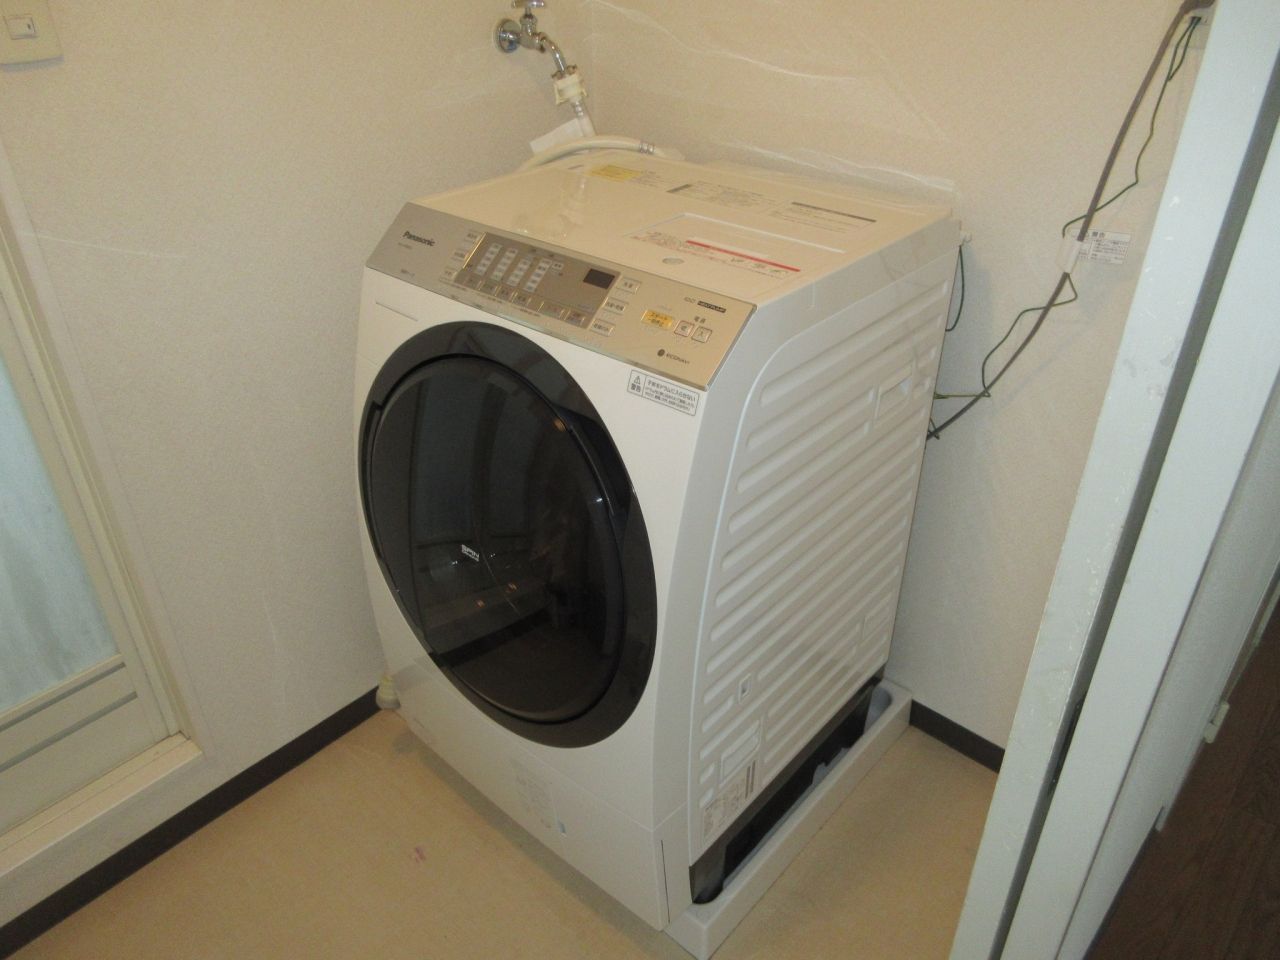 Panasonicななめドラム式洗濯乾燥機入替 | スタッフブログ | 電気工事